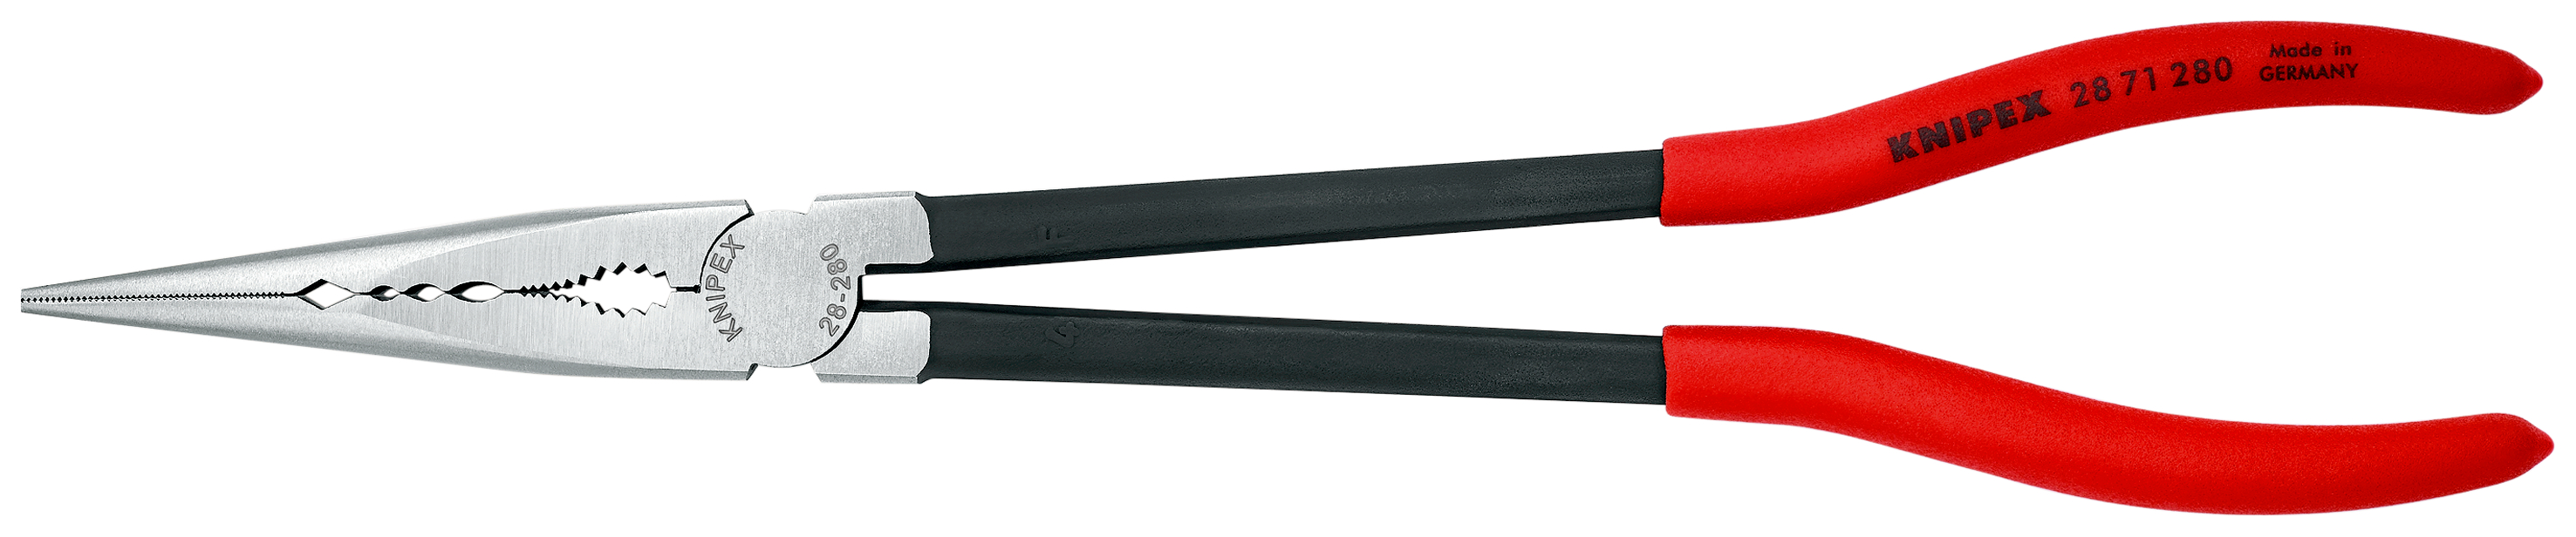 KNIPEX Montierzange mit Querprofilen mit Kunststoff überzogen schwarz atramentiert 280 mm